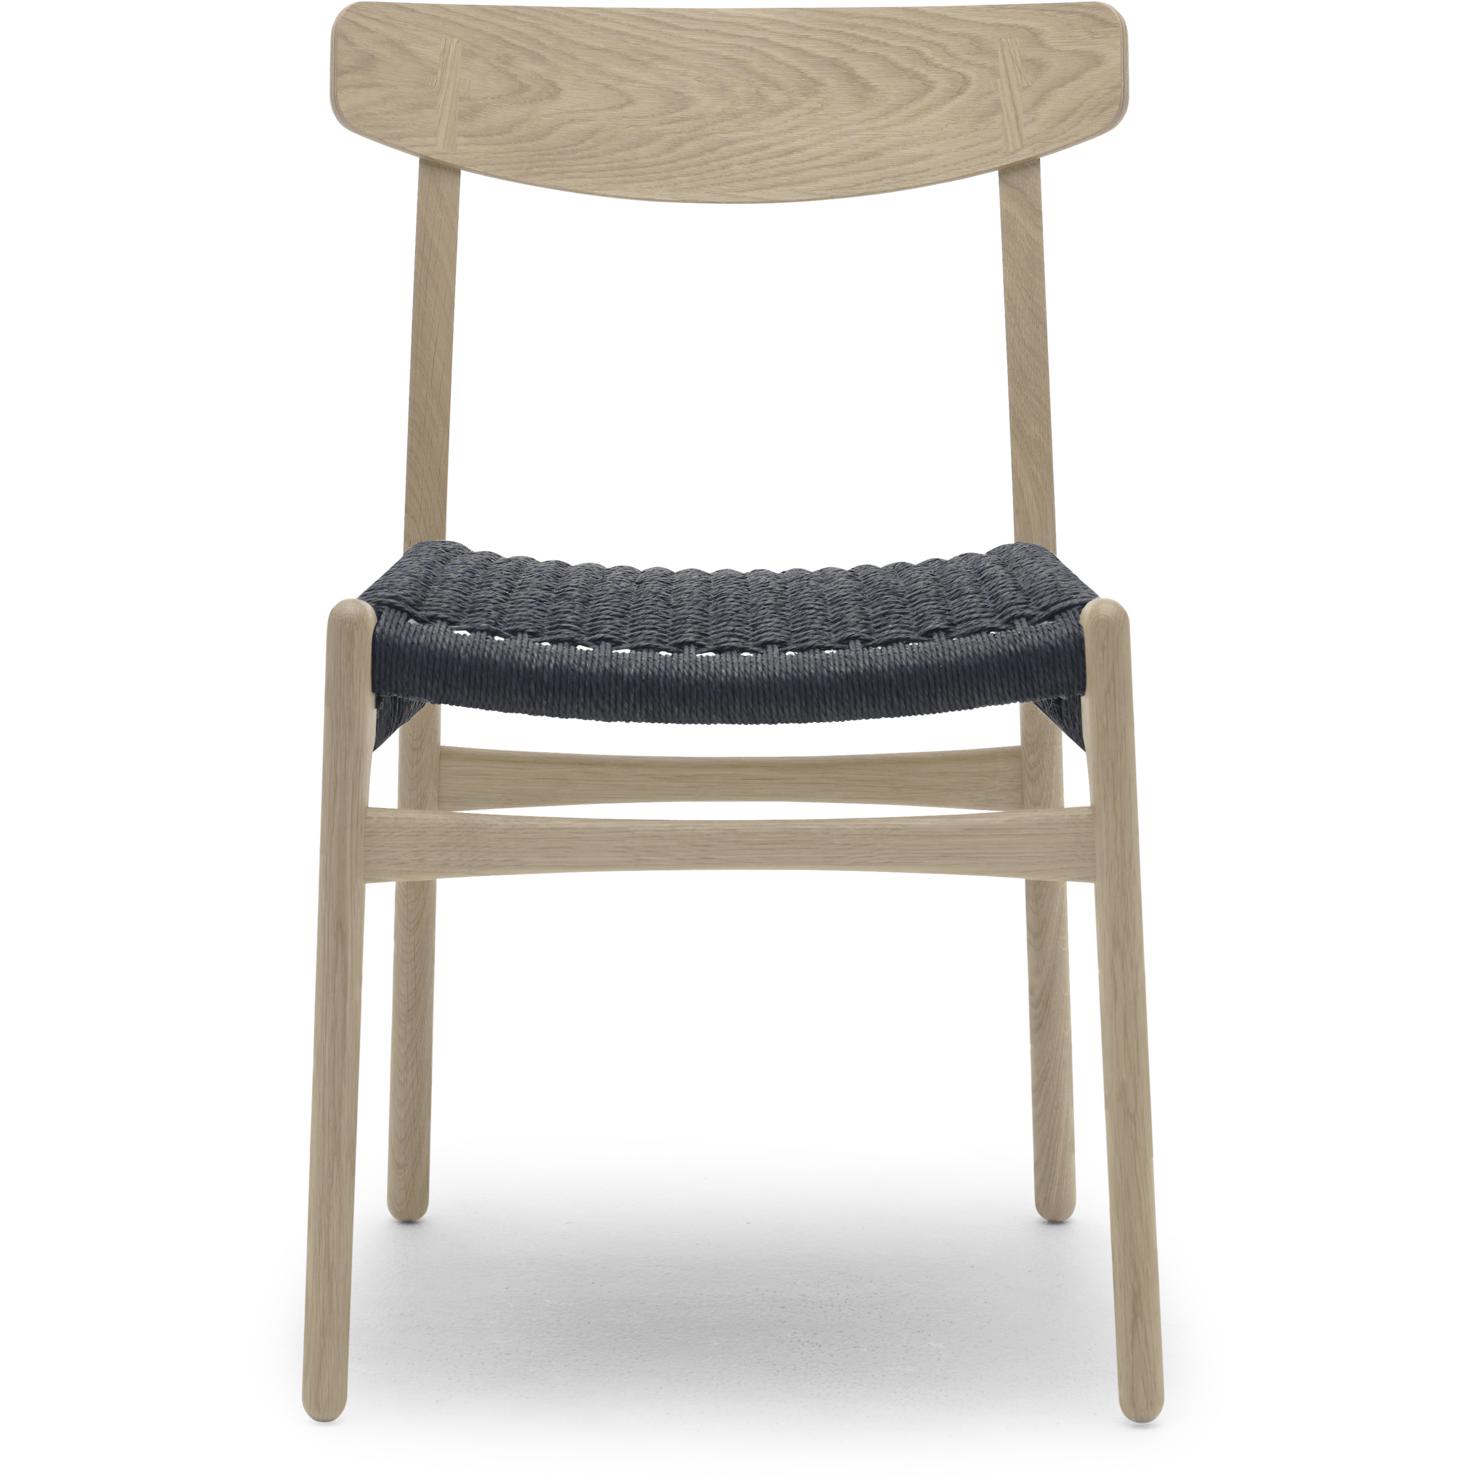 Carl Hansen CH23 -stoel, eiken zeep/zwart papiersnoer